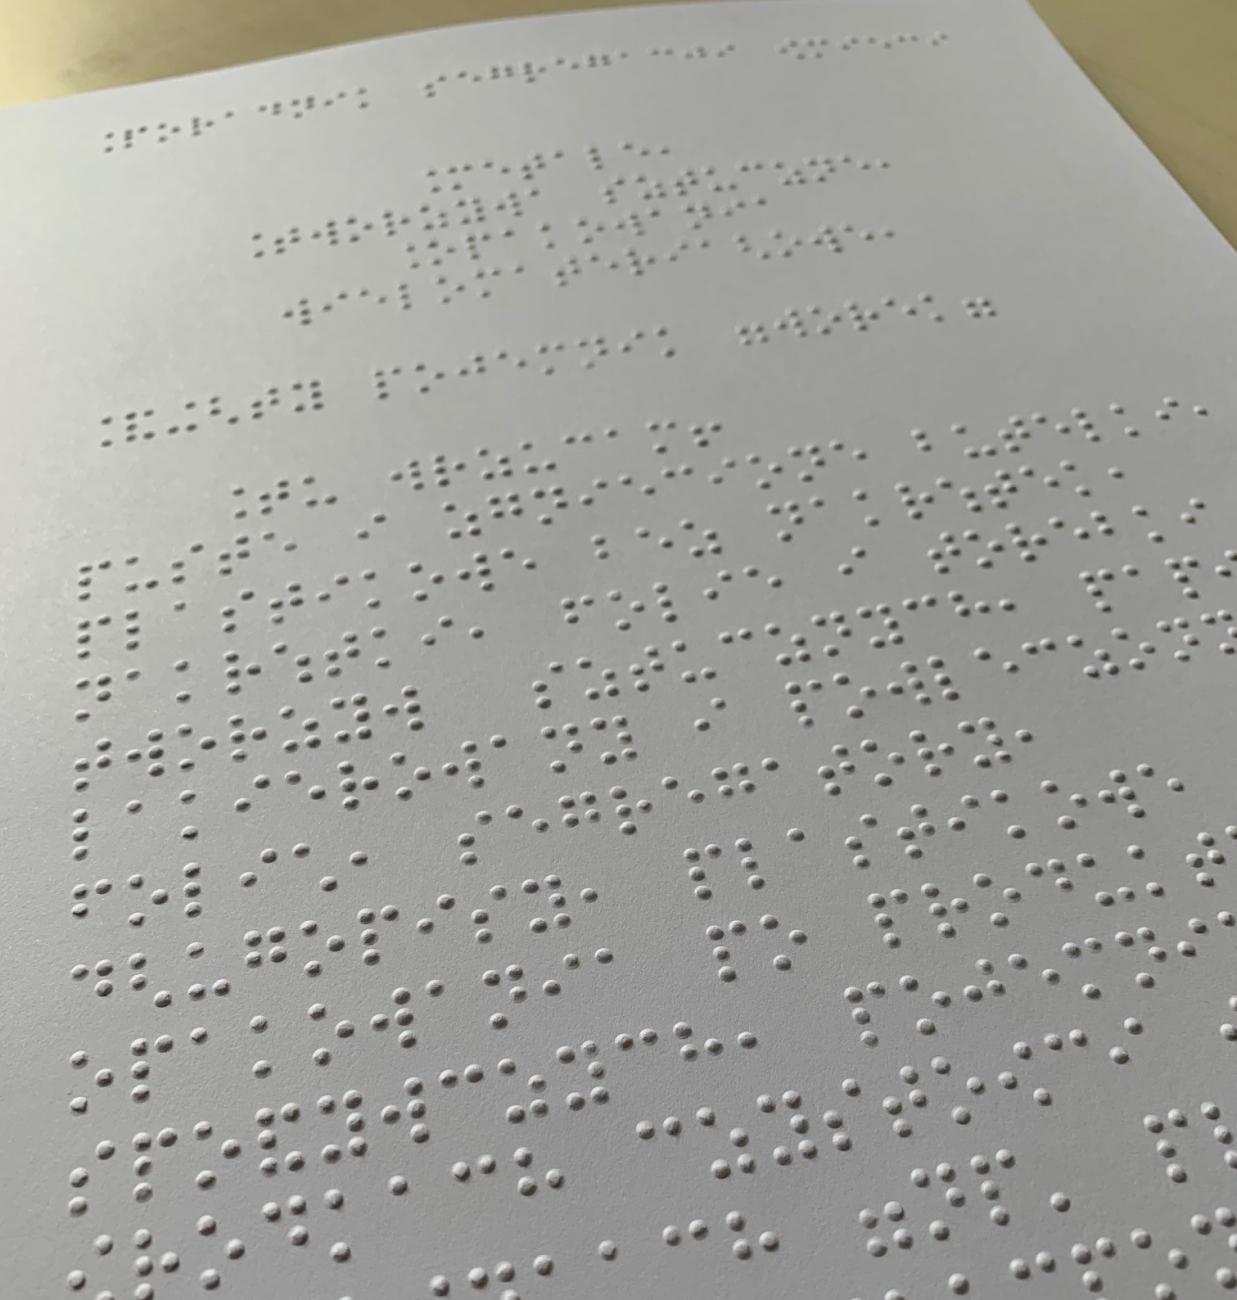 tekst w jęzuku Braille